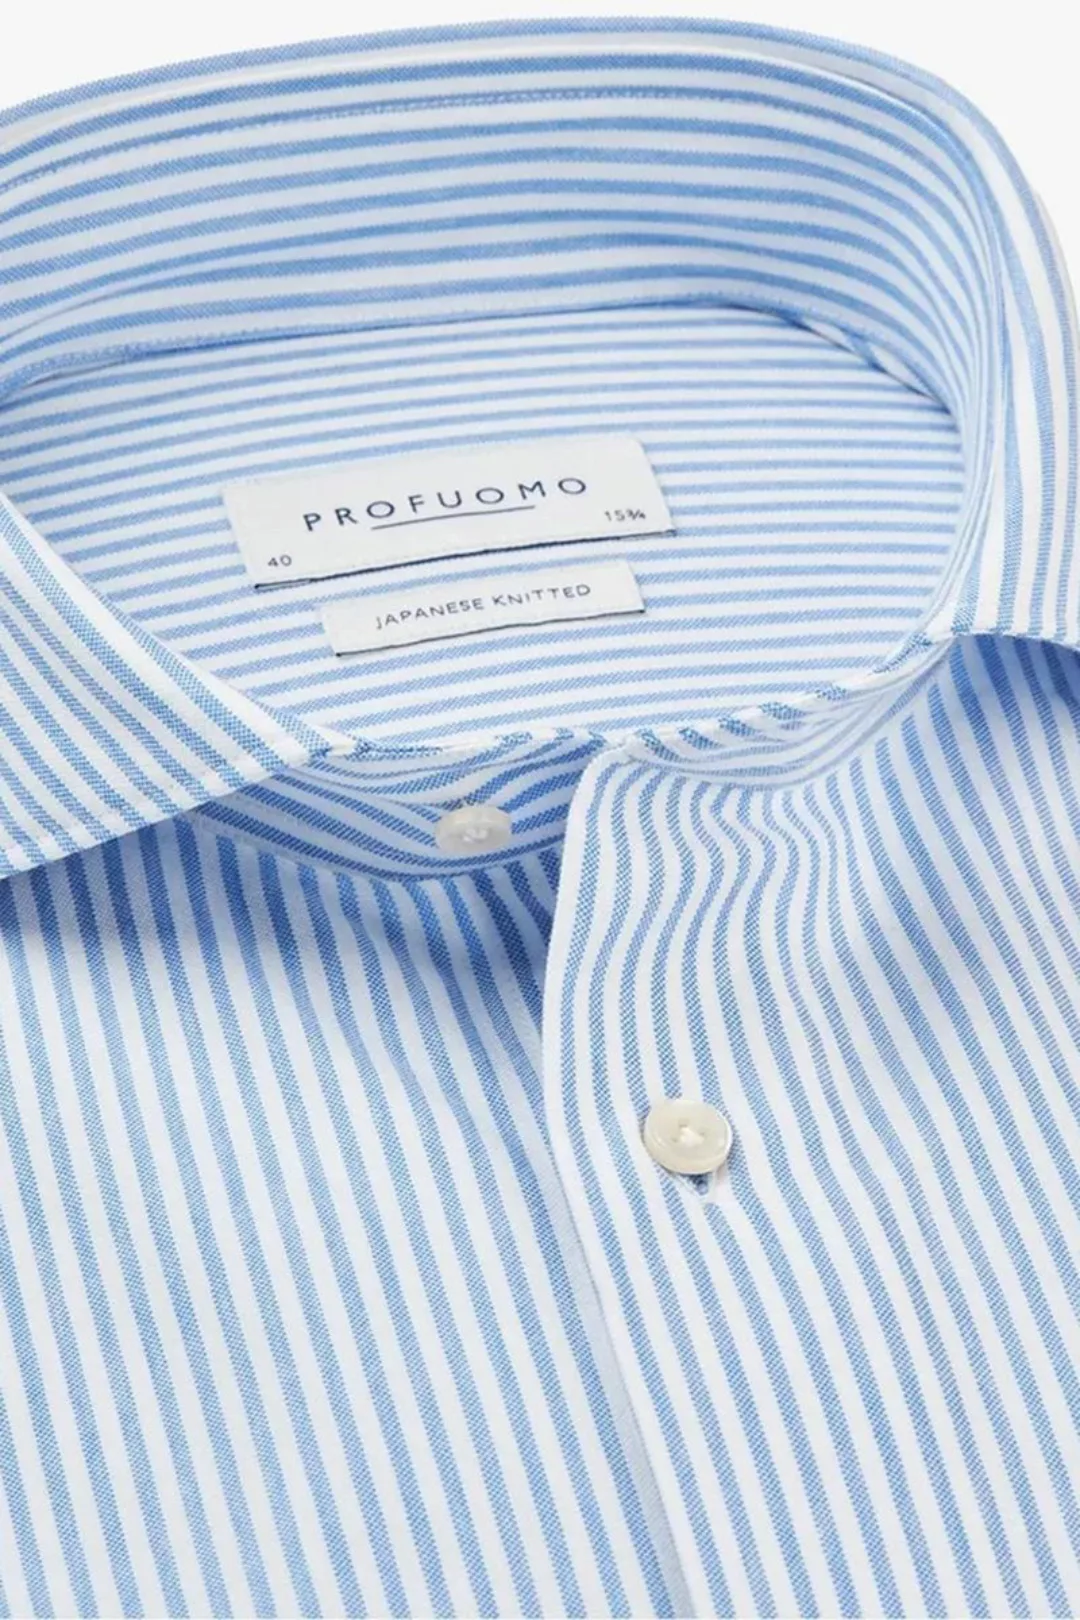 Profuomo Hemd Japanese Knitted Blau Streifen - Größe 39 günstig online kaufen